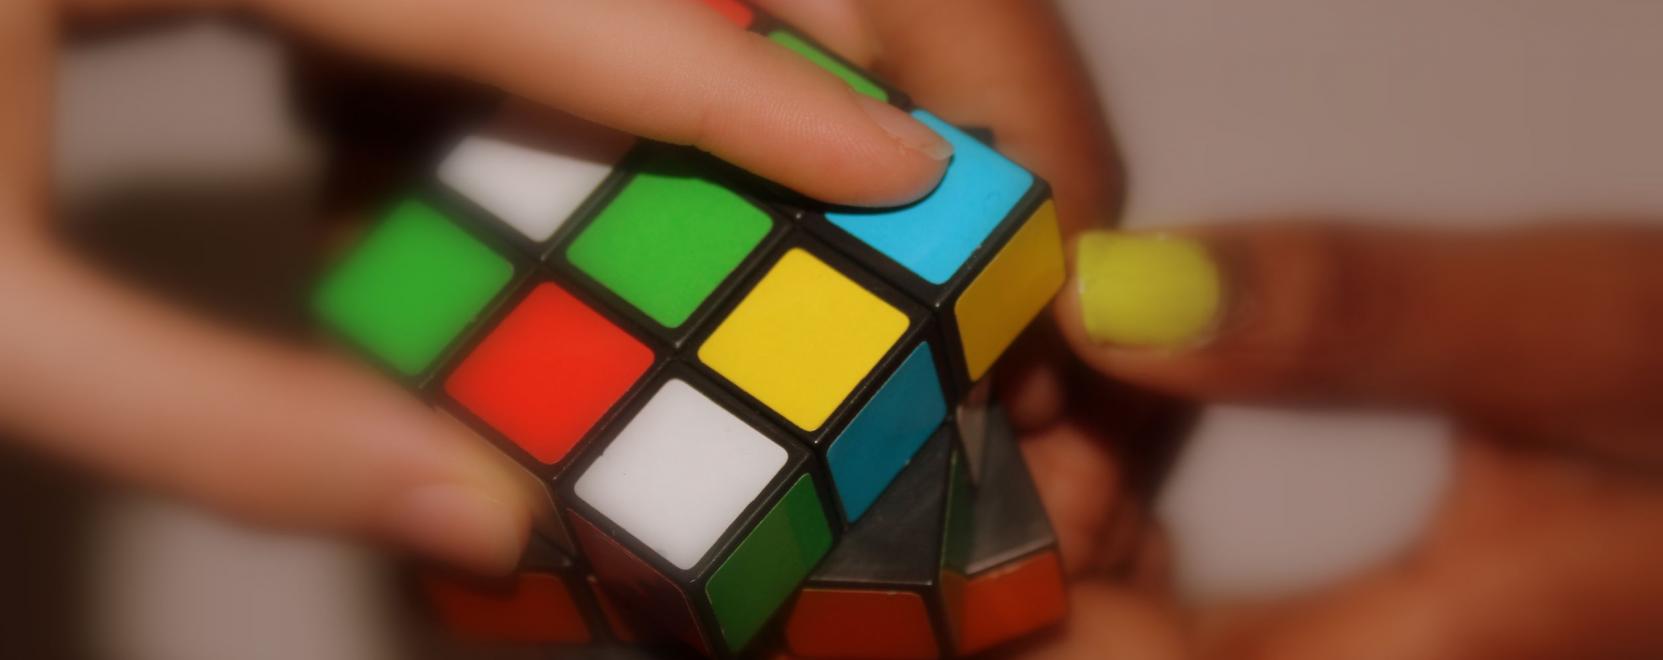 Íme, a Rubik-kocka okos változata